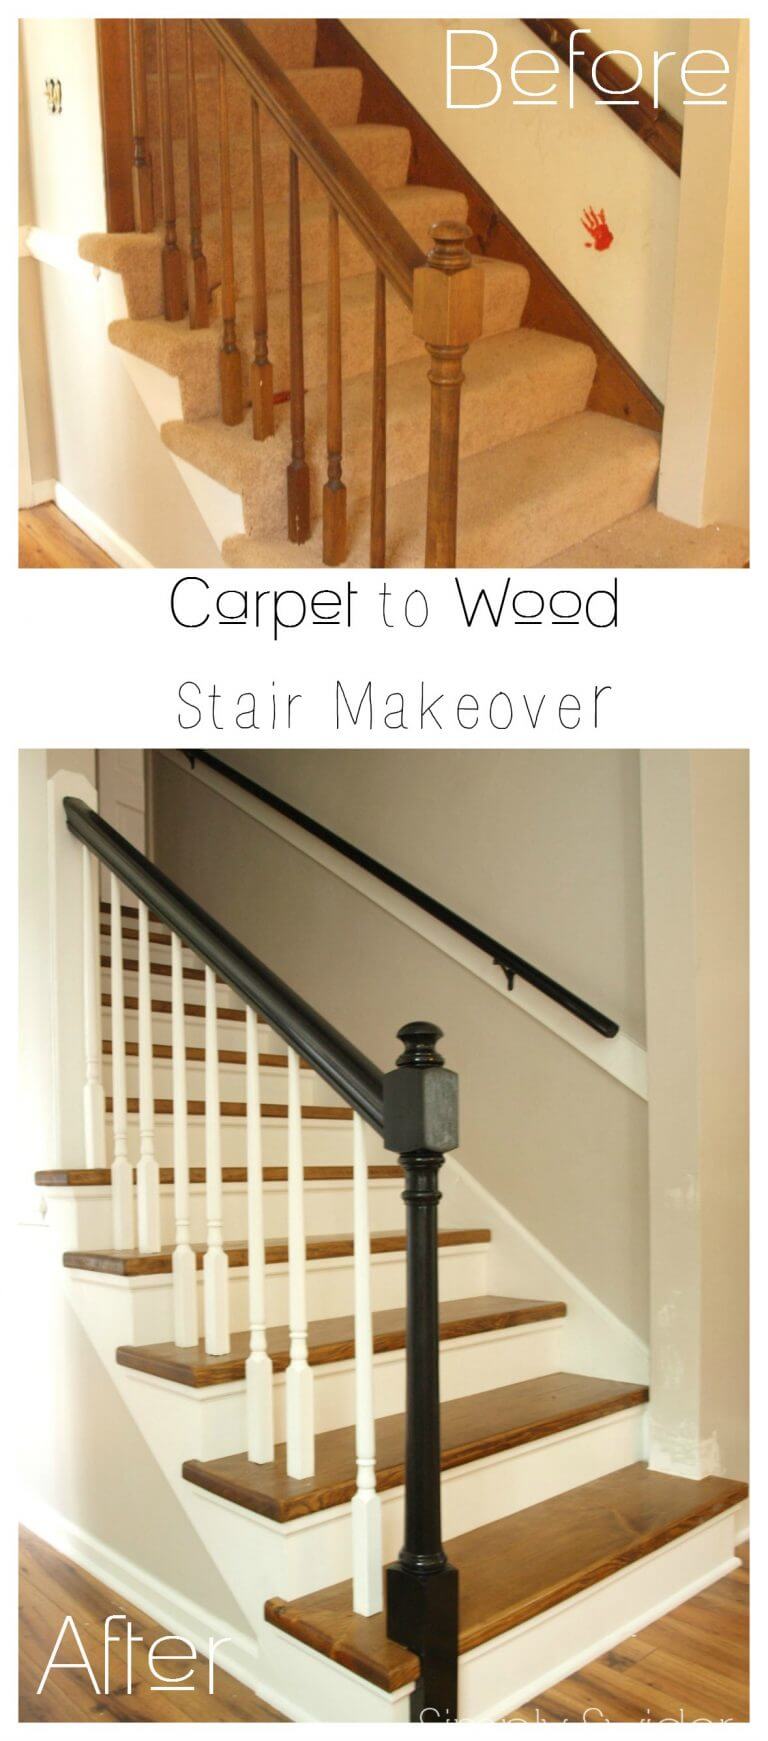 Top 5 Stair Remodel Ideas - Best DIY Stair Makeovers